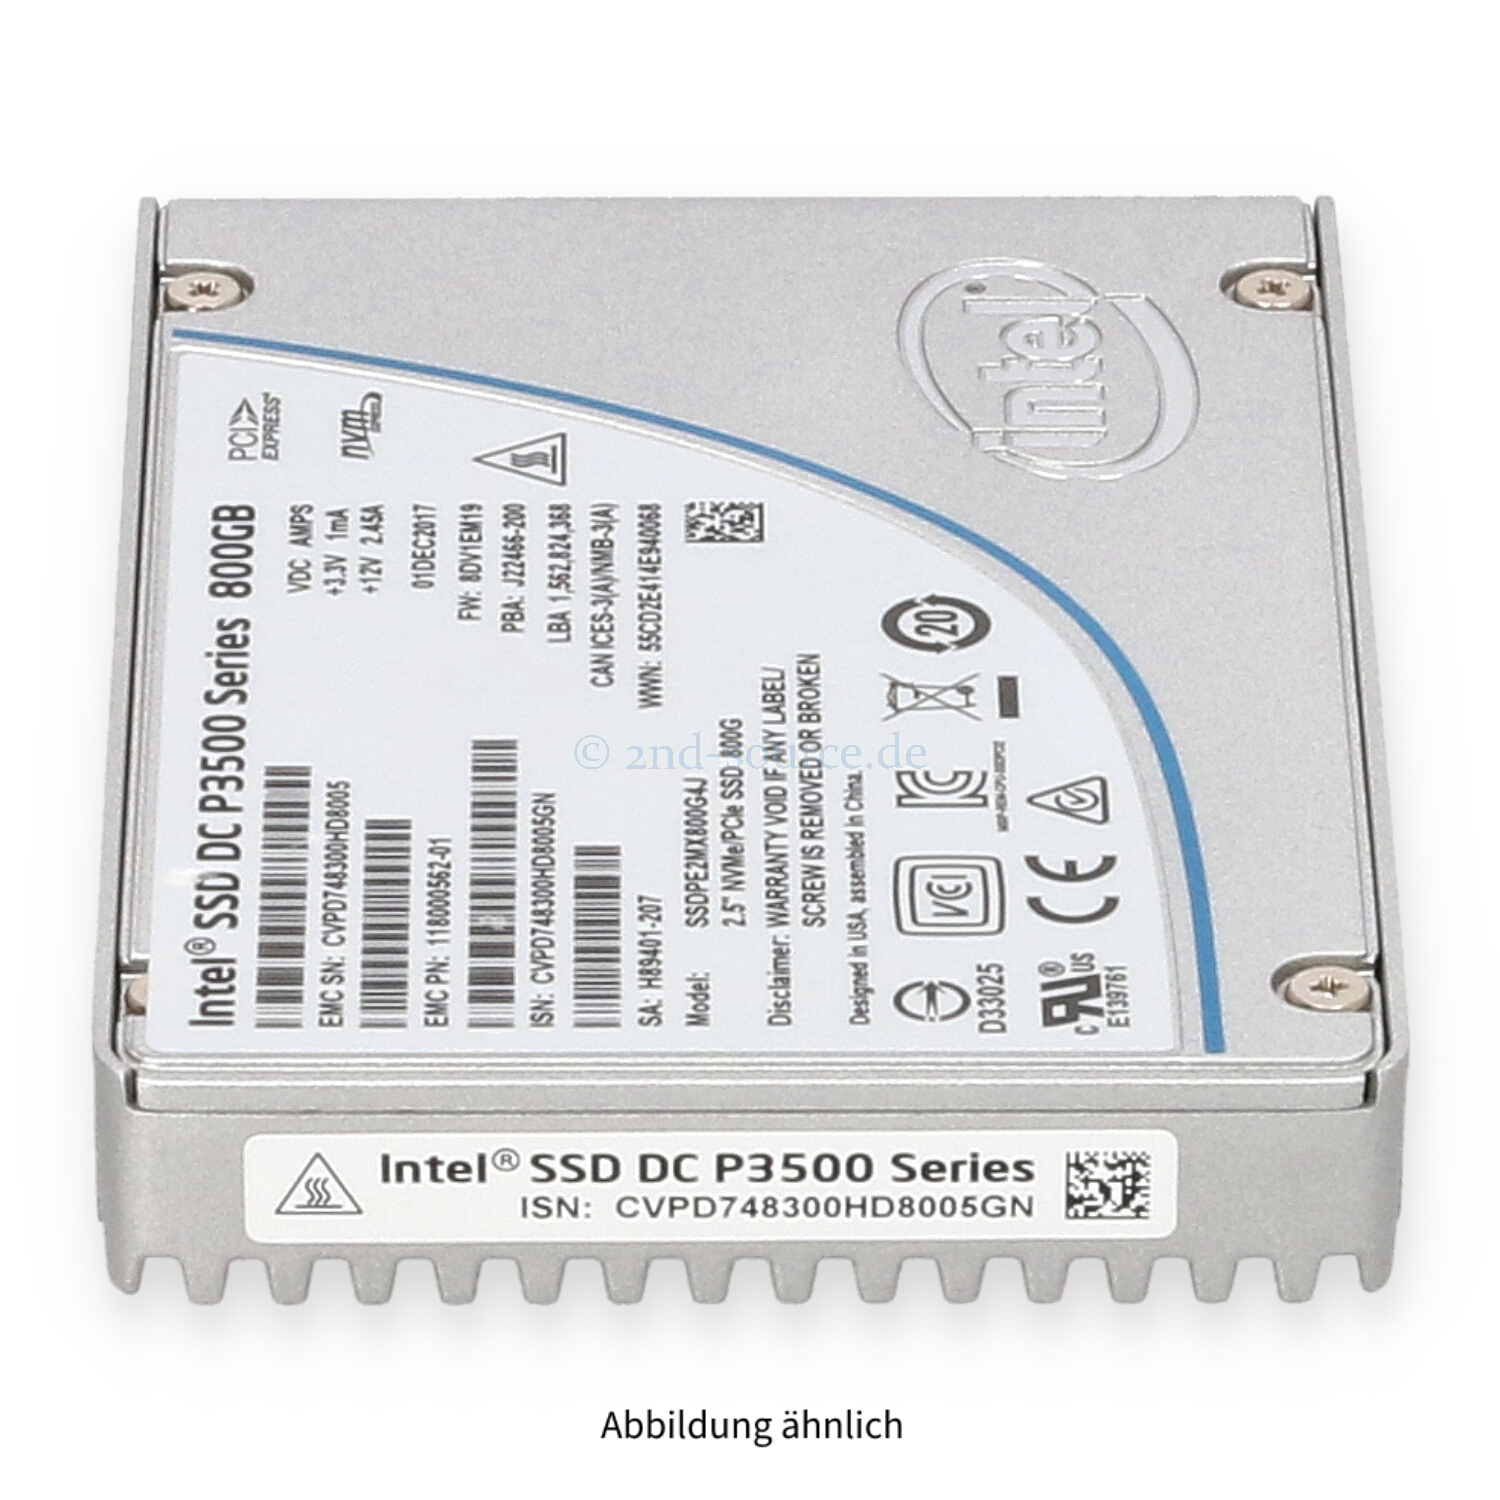 Intel P3500 800GB NVMe SFF SSD SSDPE2MX800G4J